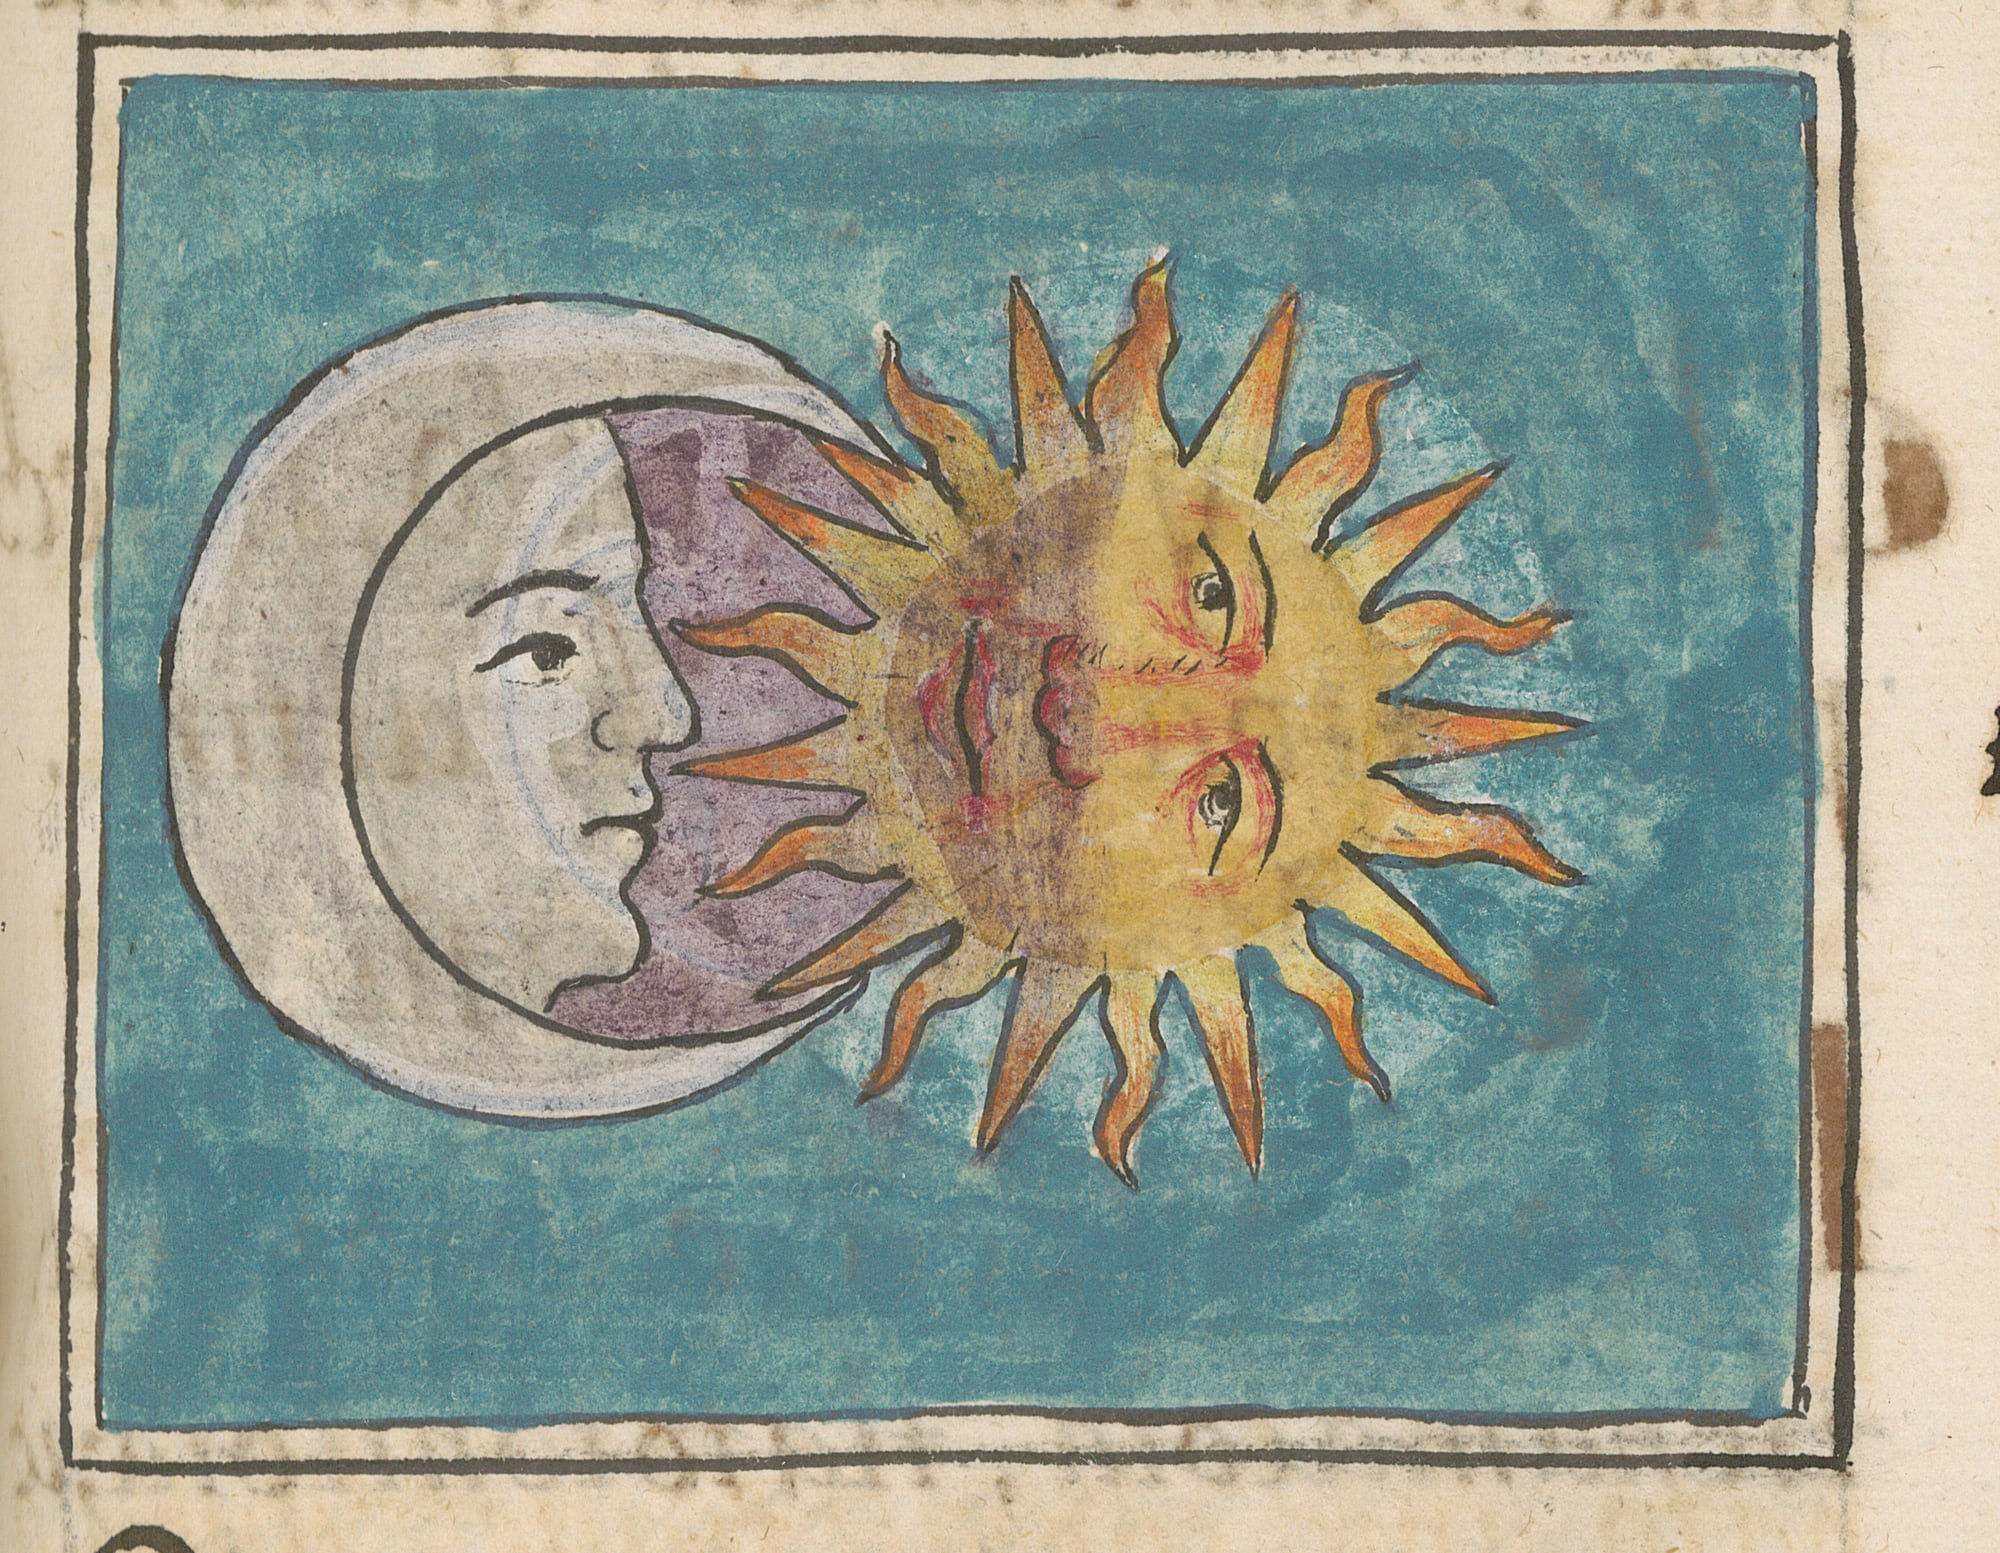 Un eclipse lunar, encontrado en el Libro 7 del Códice Florentino.